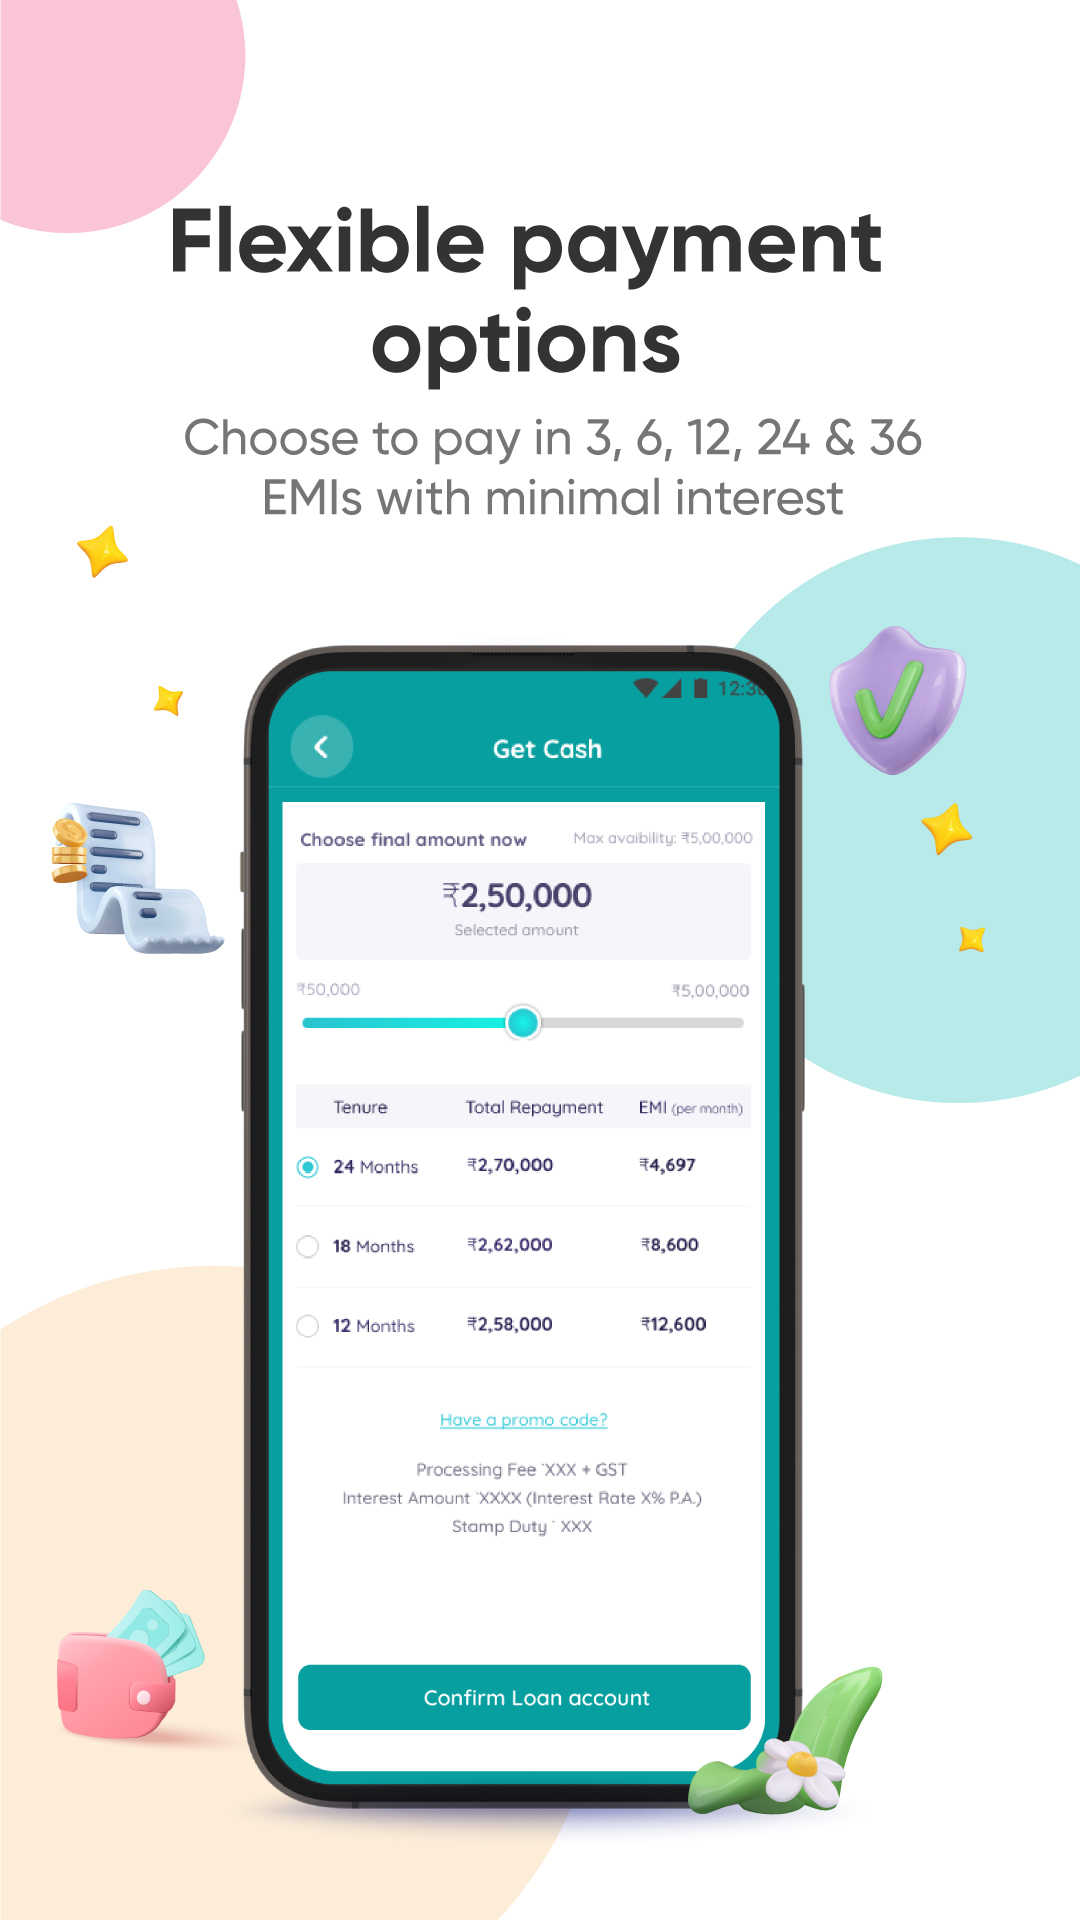 Fibe (Formerly EarlySalary) Online Loan App